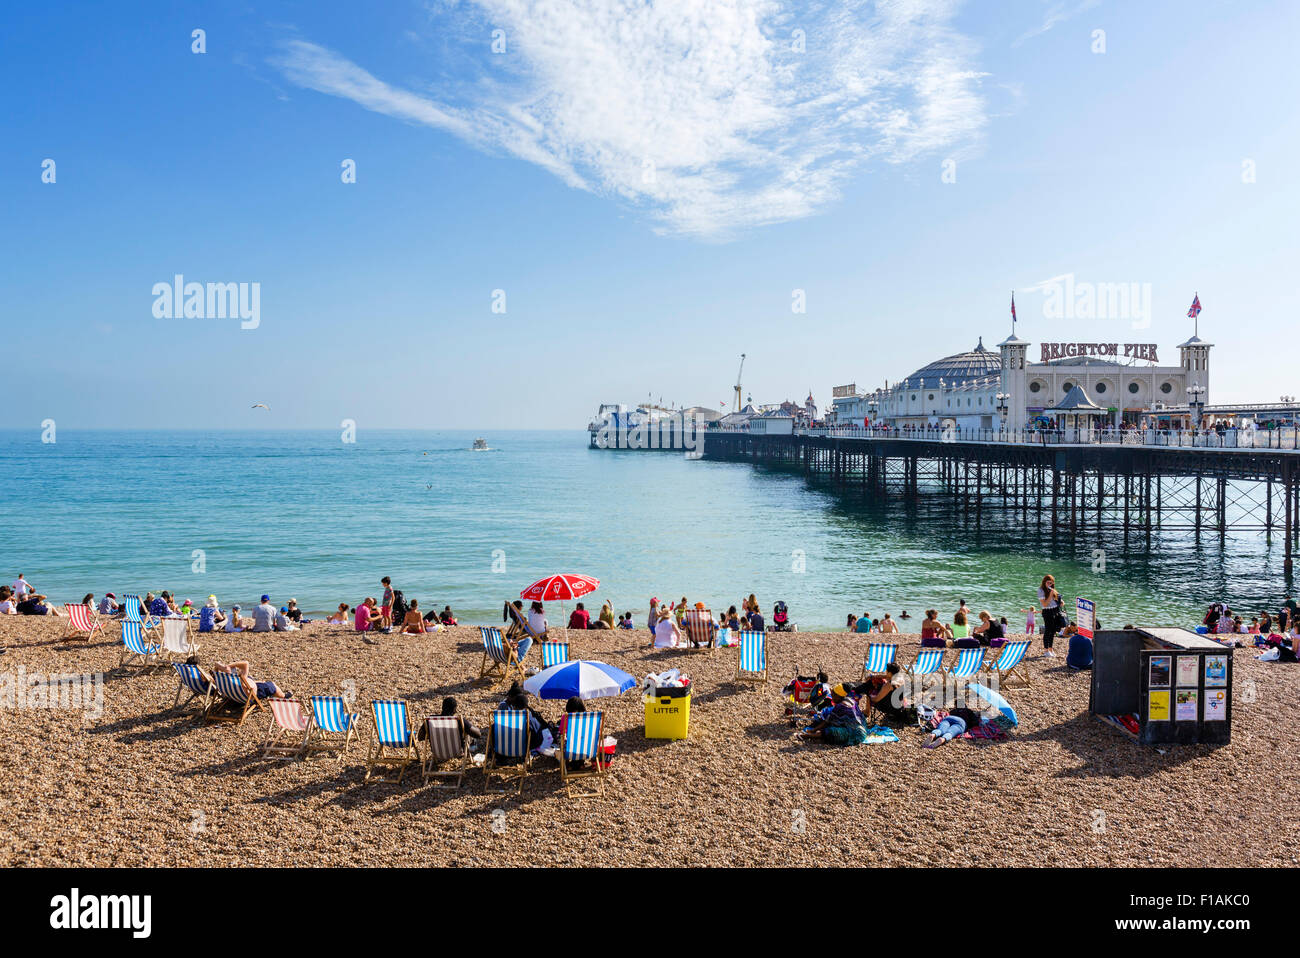 La jetée de Brighton, Brighton, East Sussex, Angleterre Royaume-uni Banque D'Images